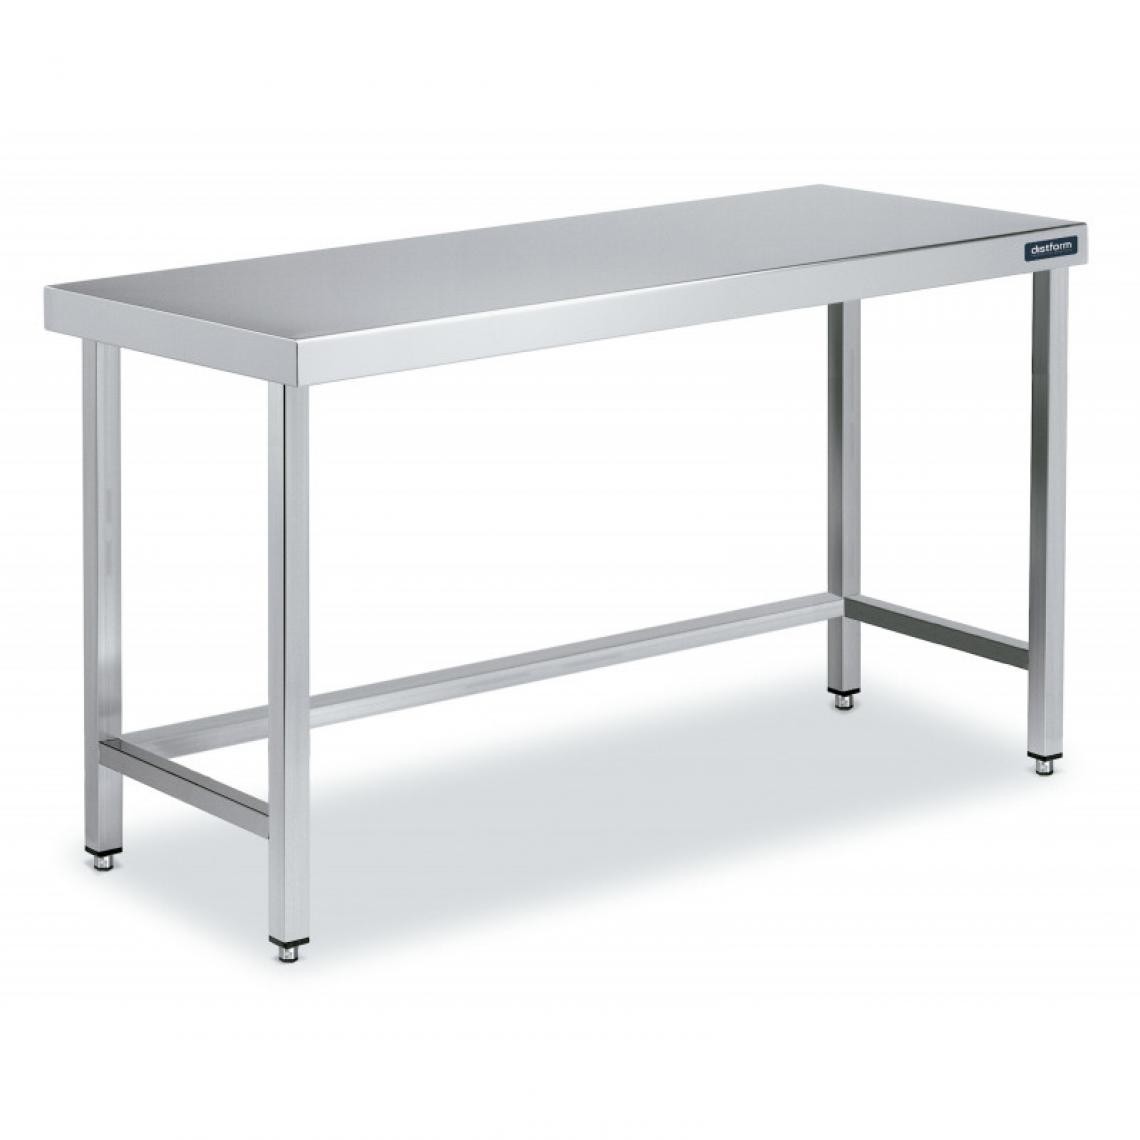 DISTFORM - Table Centrale en Inox avec renforts Profondeur 700 mm - Distform - Acier inoxydable1500x700 - Tables à manger